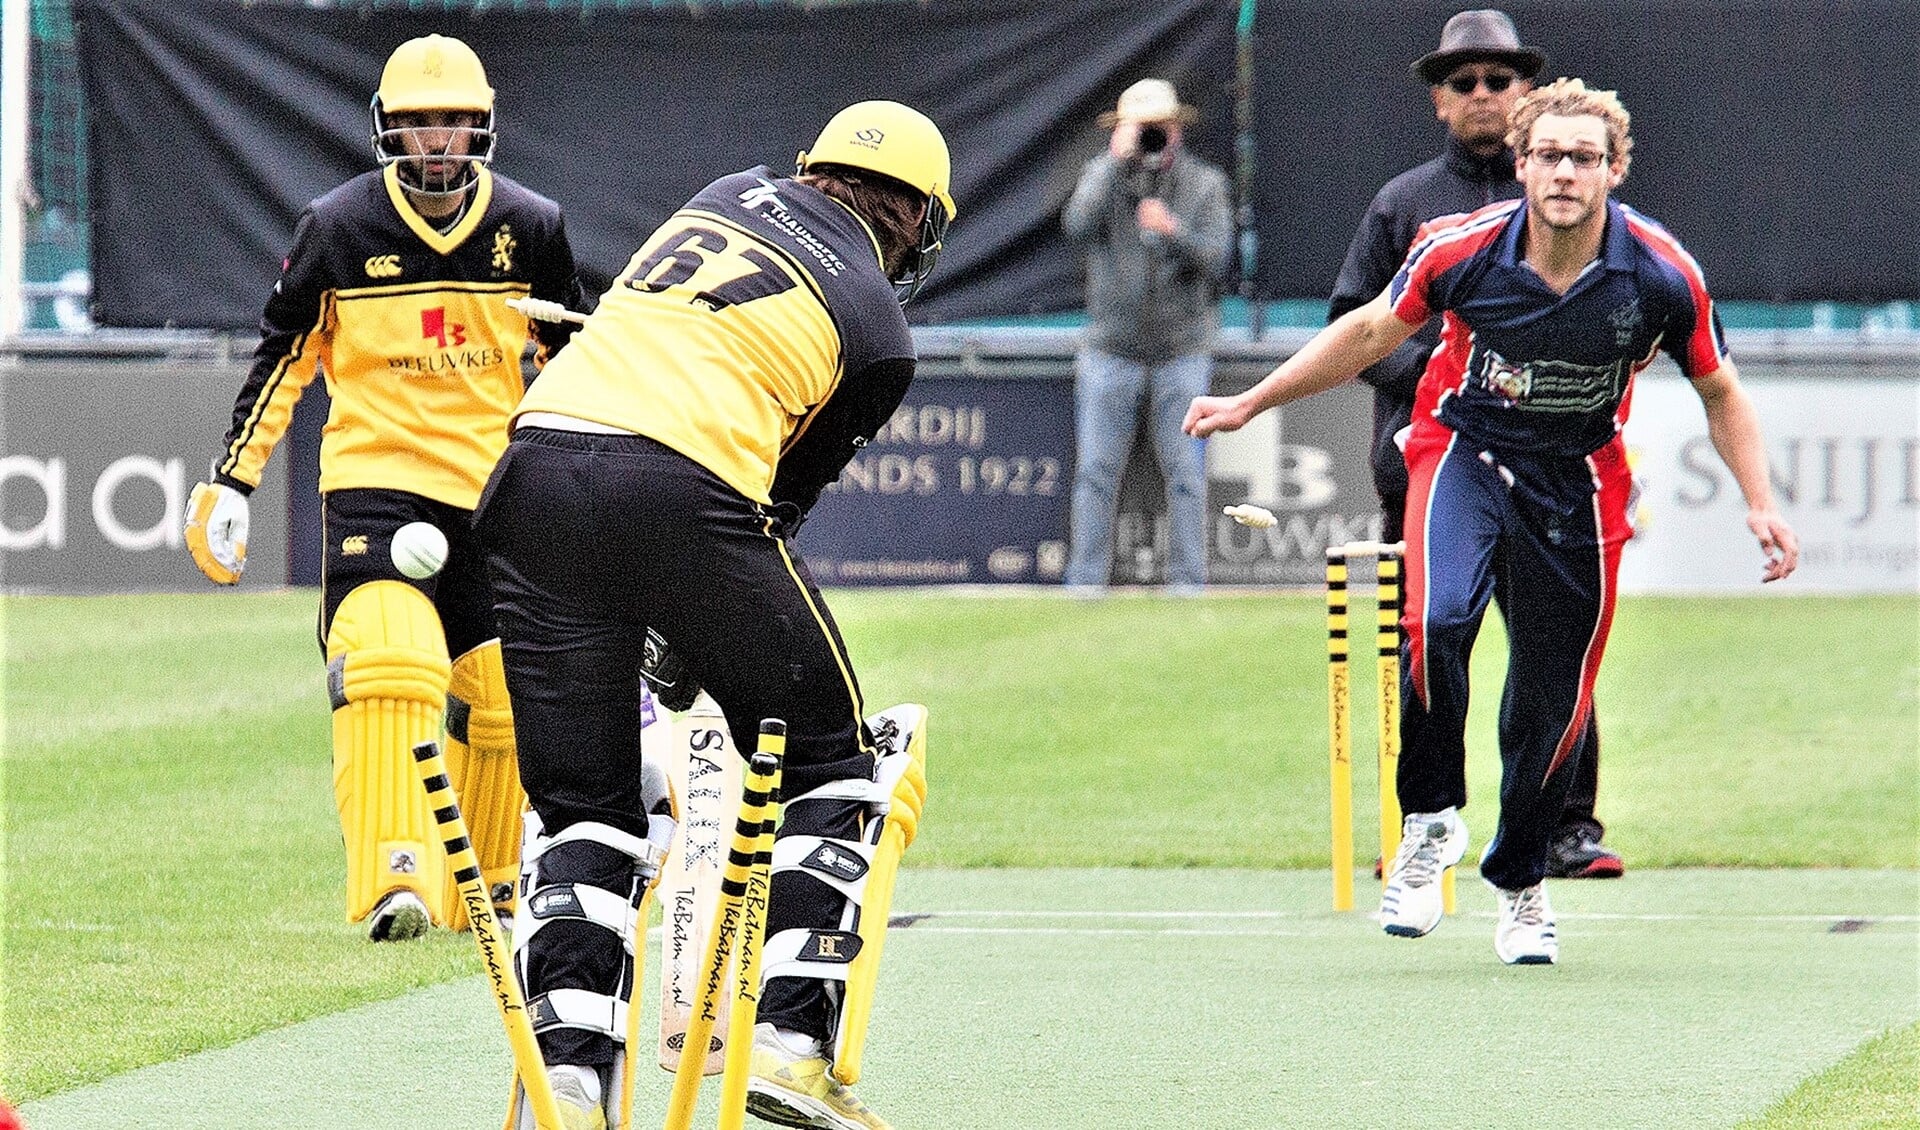 Viv Kingma bowlt Tonny Staal (HCC). Een dag later zou de Voorburger uitblinken met vijf wickets (foto: Mark Steffelaar).